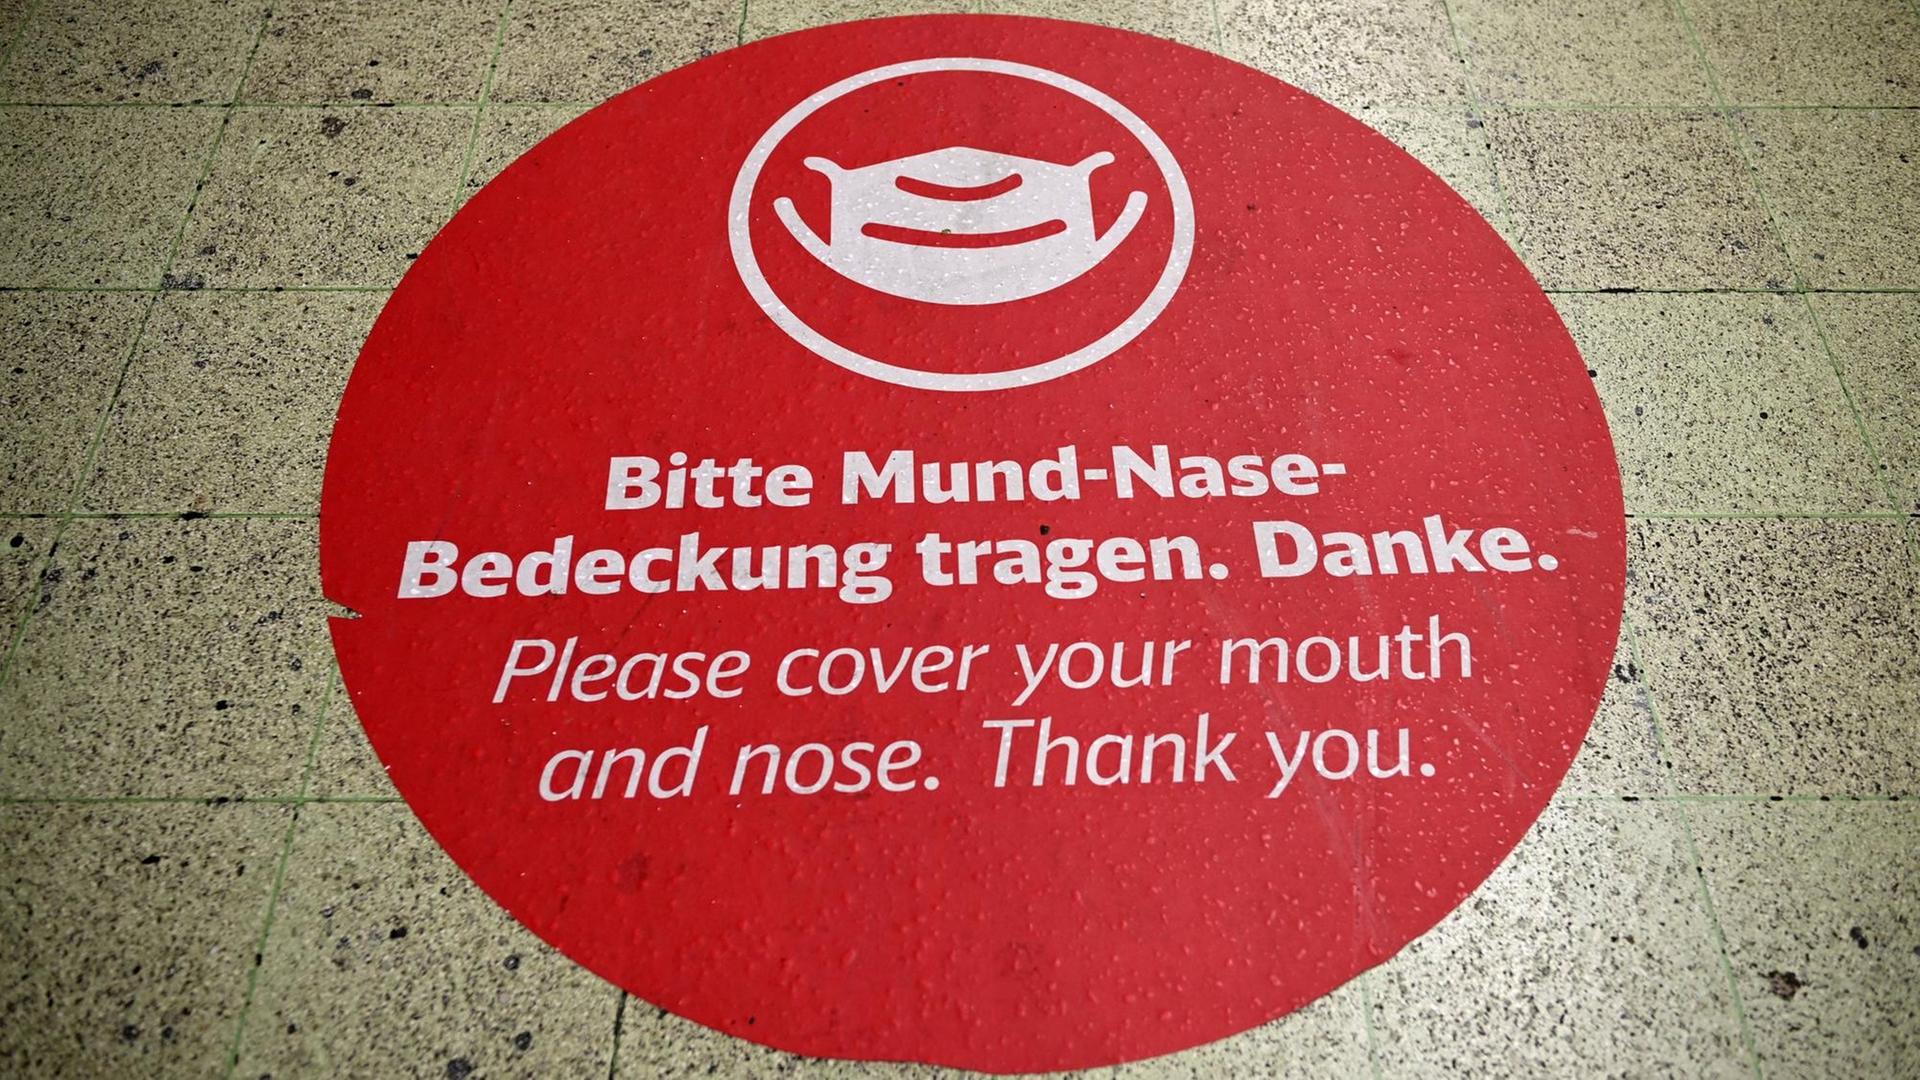 Am Boden ist das rote Bild einer Maske zu sehen und dazu der Hinweis: "Bitte Mund-Nase-Bedeckung tragen. Danke".